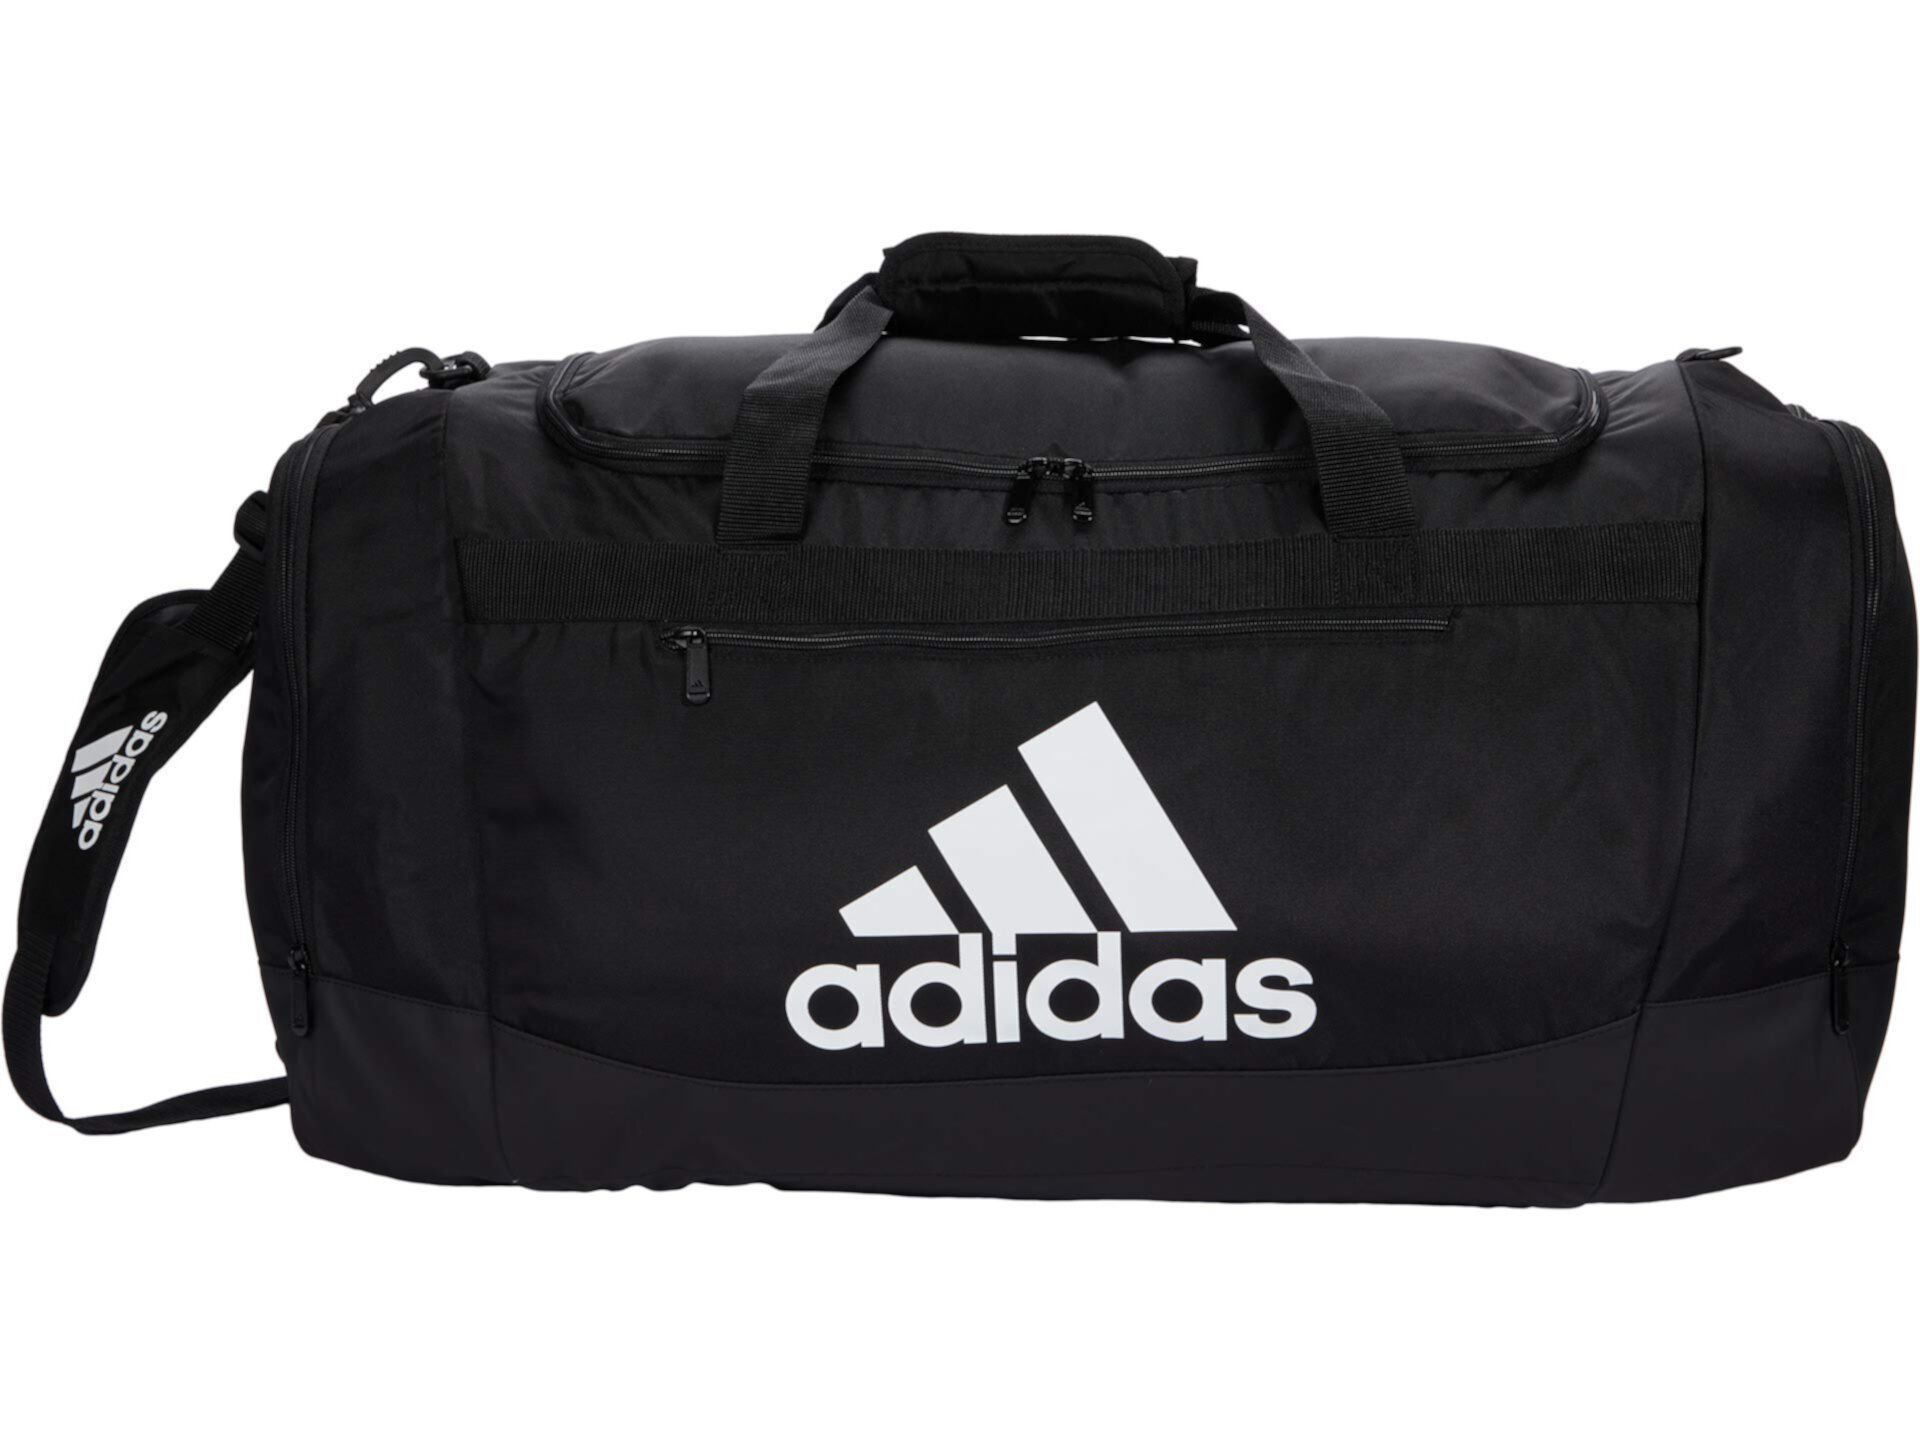 Большая спортивная сумка Defender 4 Adidas